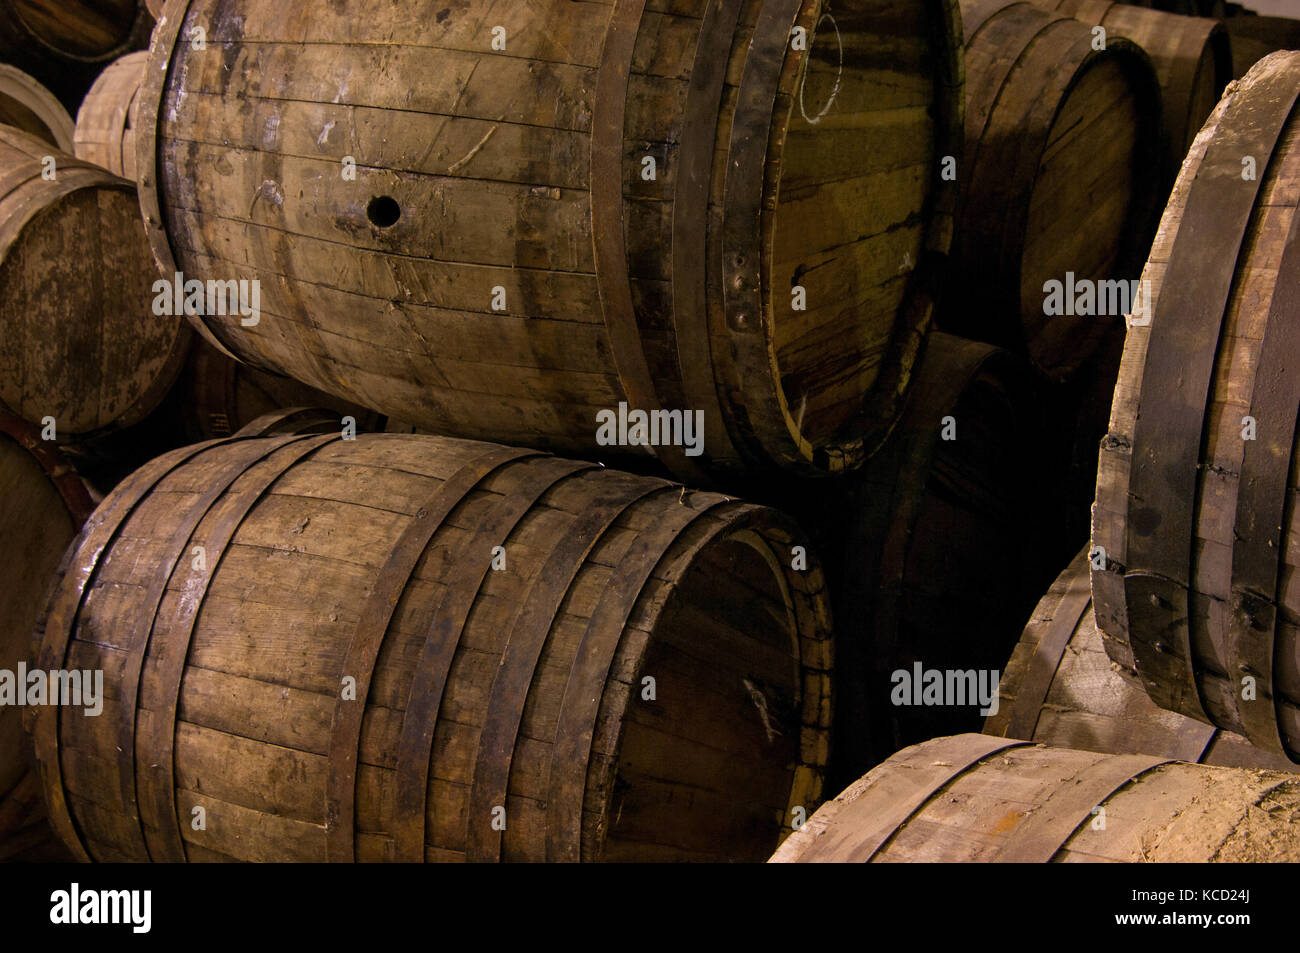 several wooden barrels closeup Stock Photo